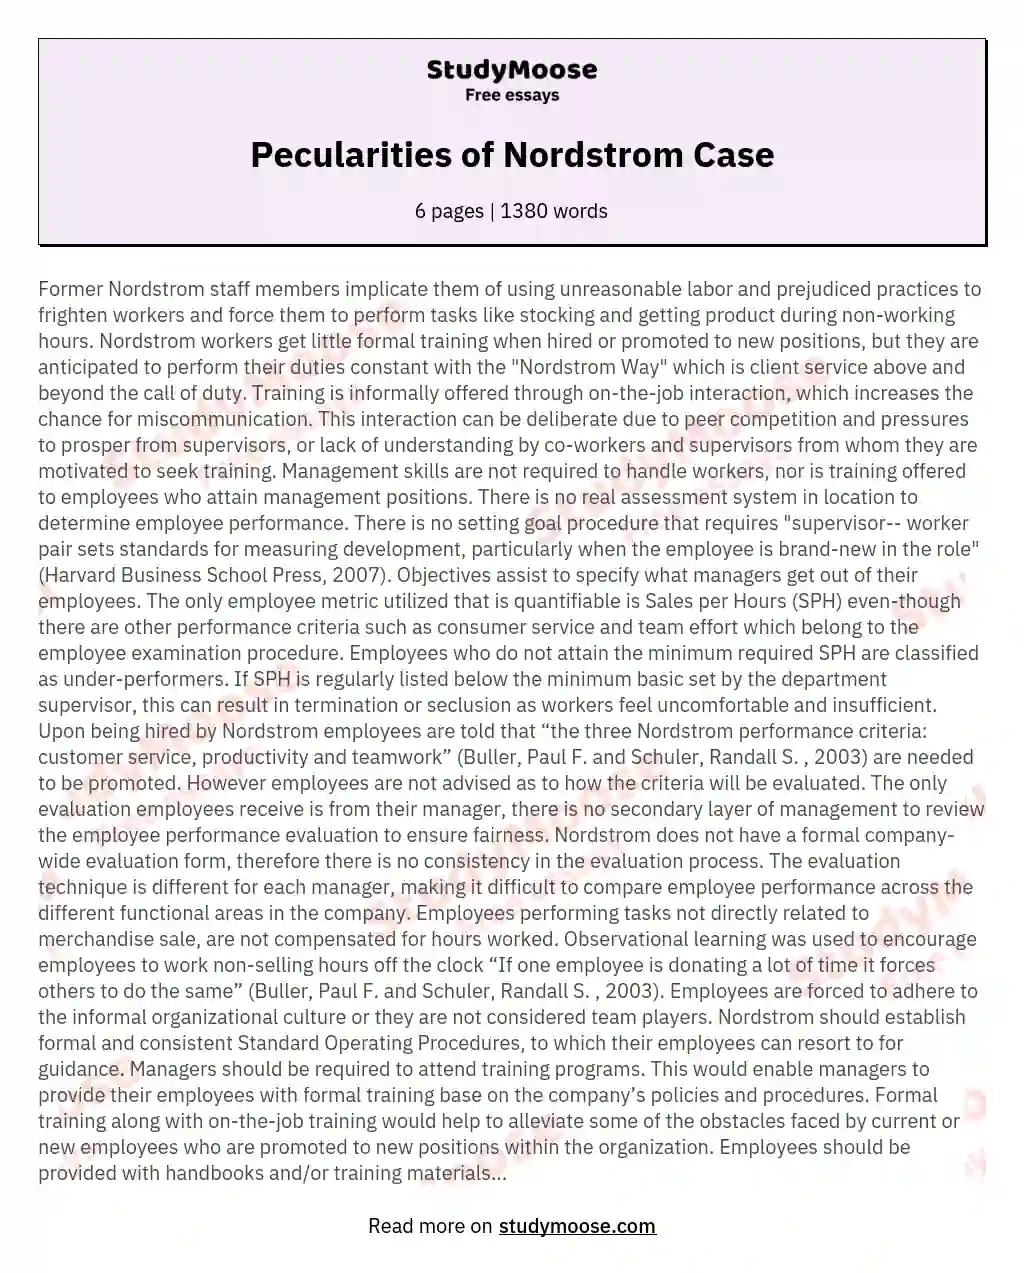 Pecularities of Nordstrom Case essay